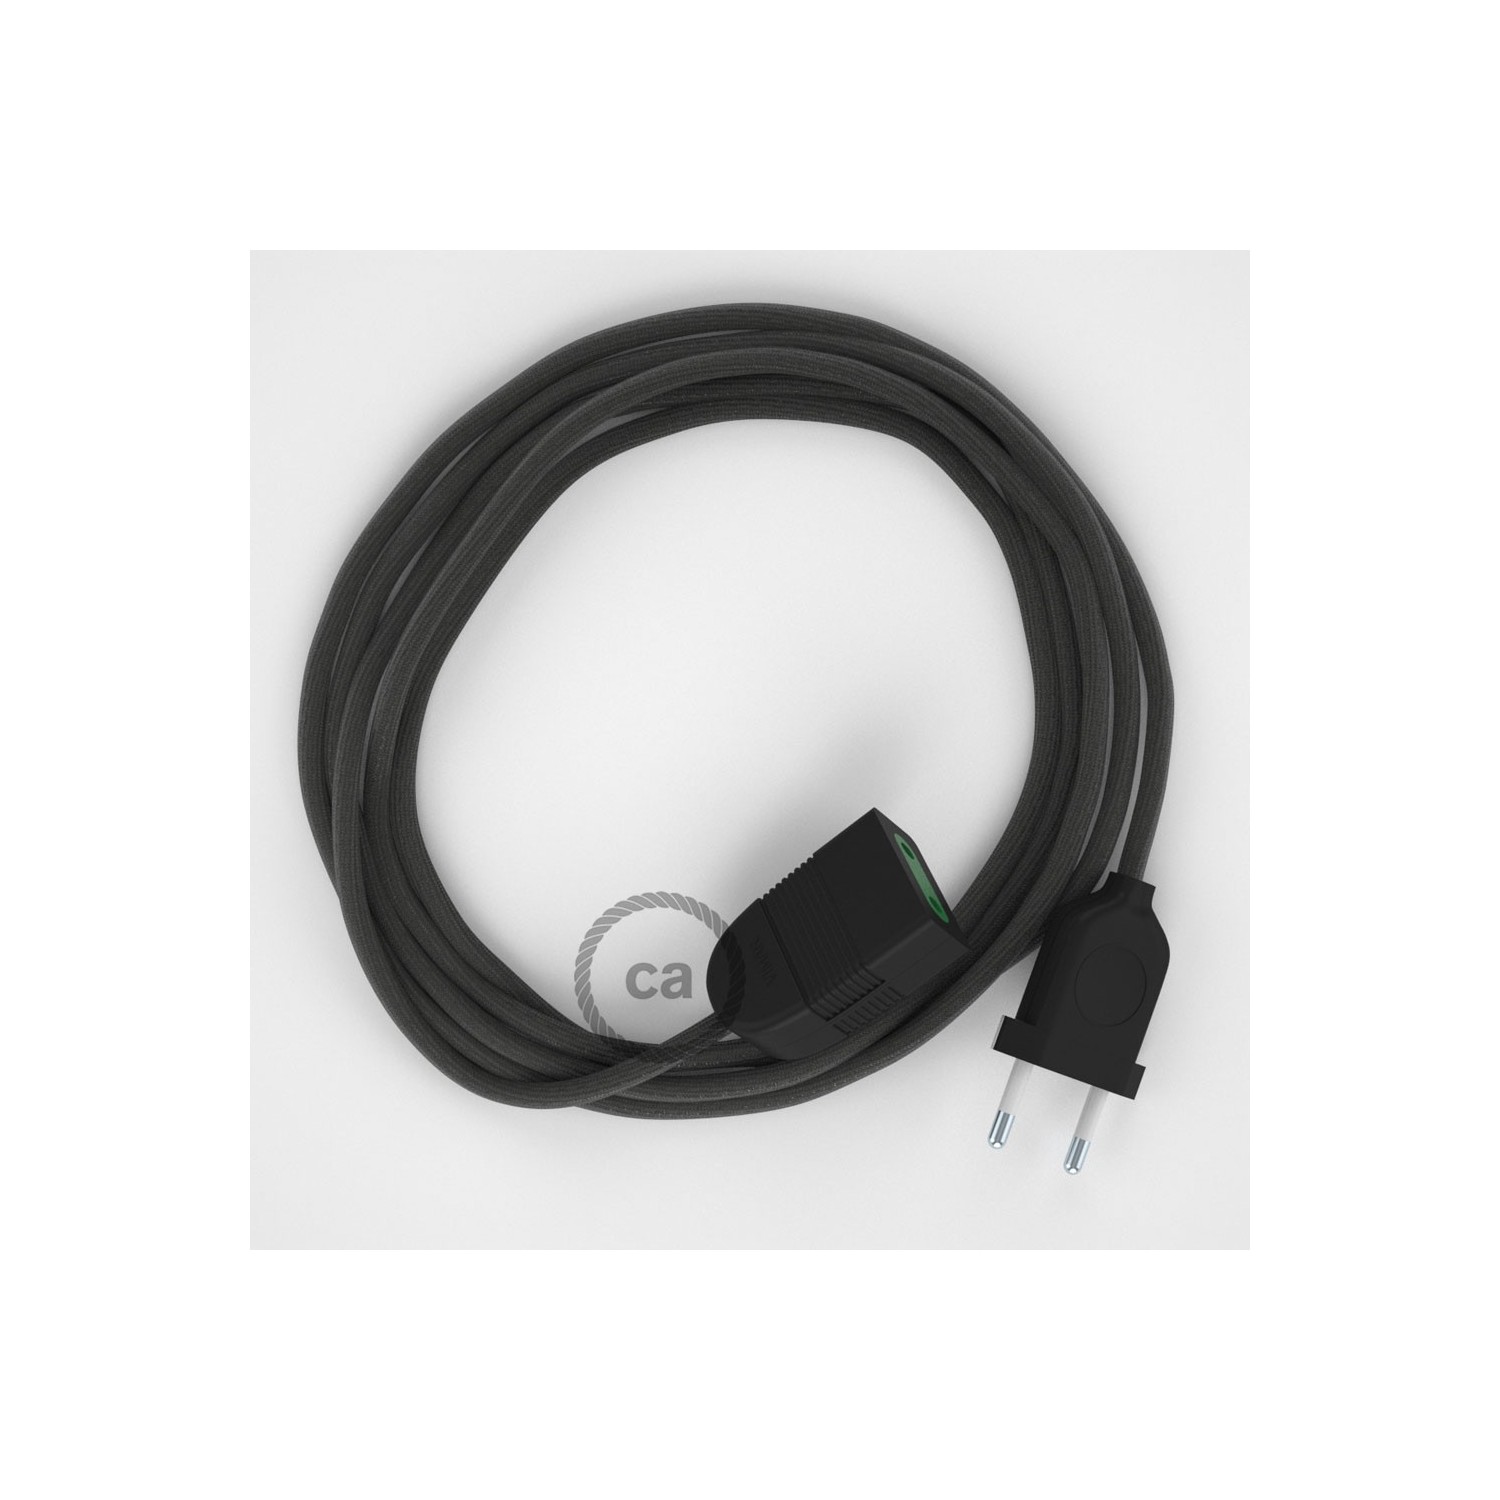 Podaljševalni kabel za napajanje (2P 10A) temno siv rejon RM26 - Made in Italy